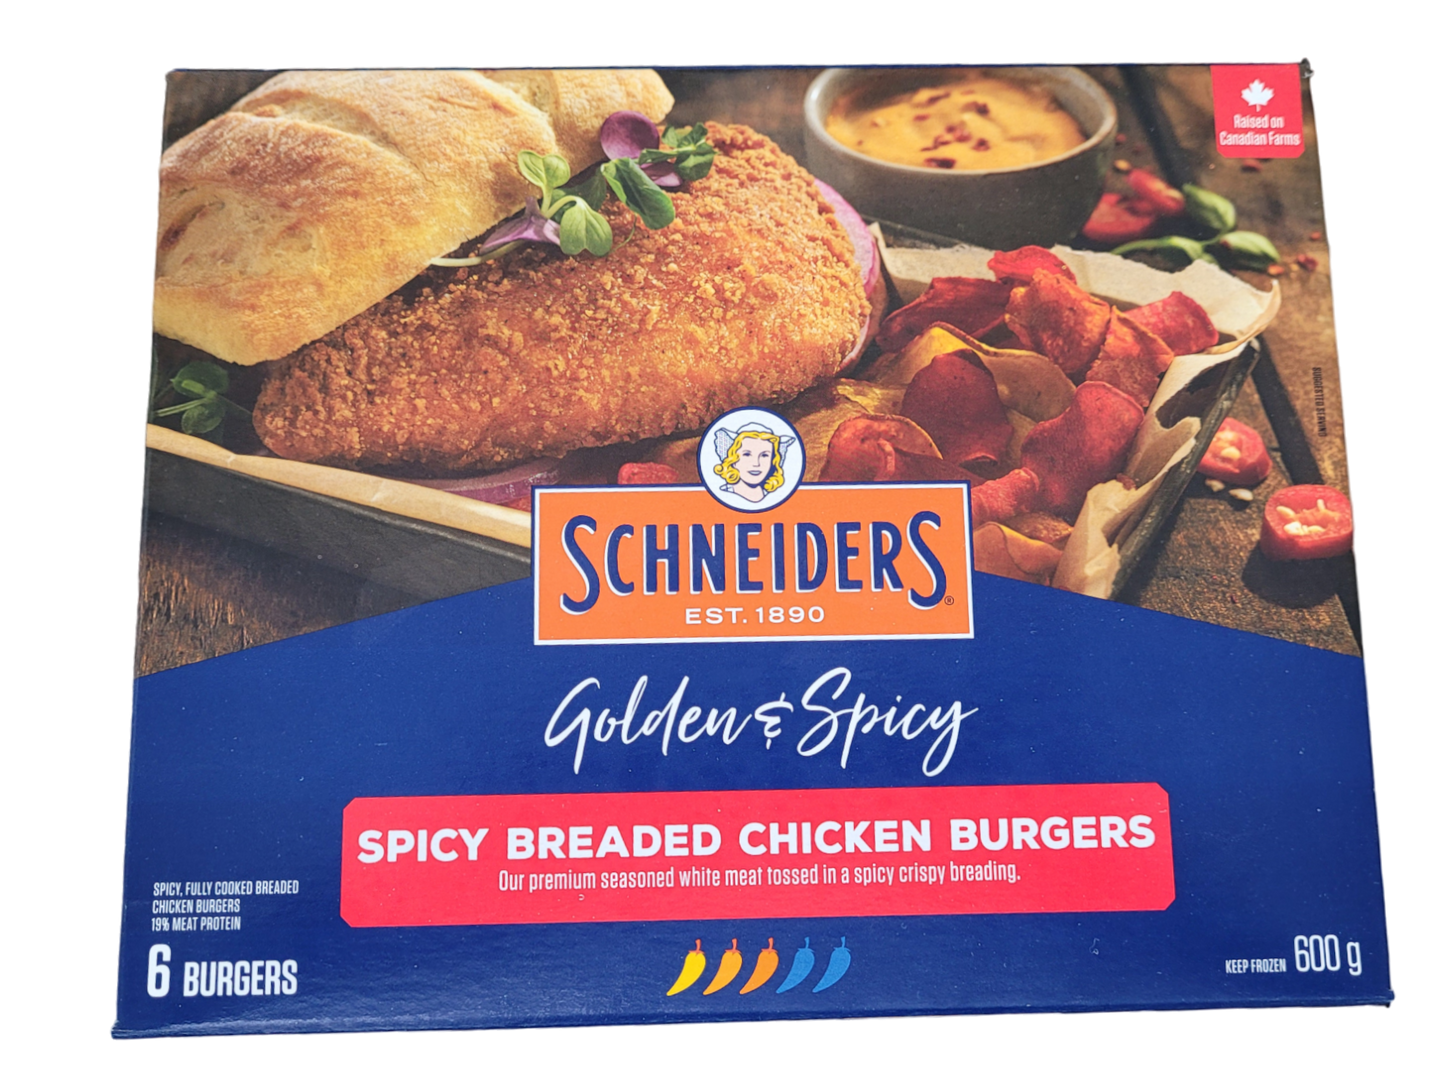 Spicy Breaded Chicken Burgers - Schneiders